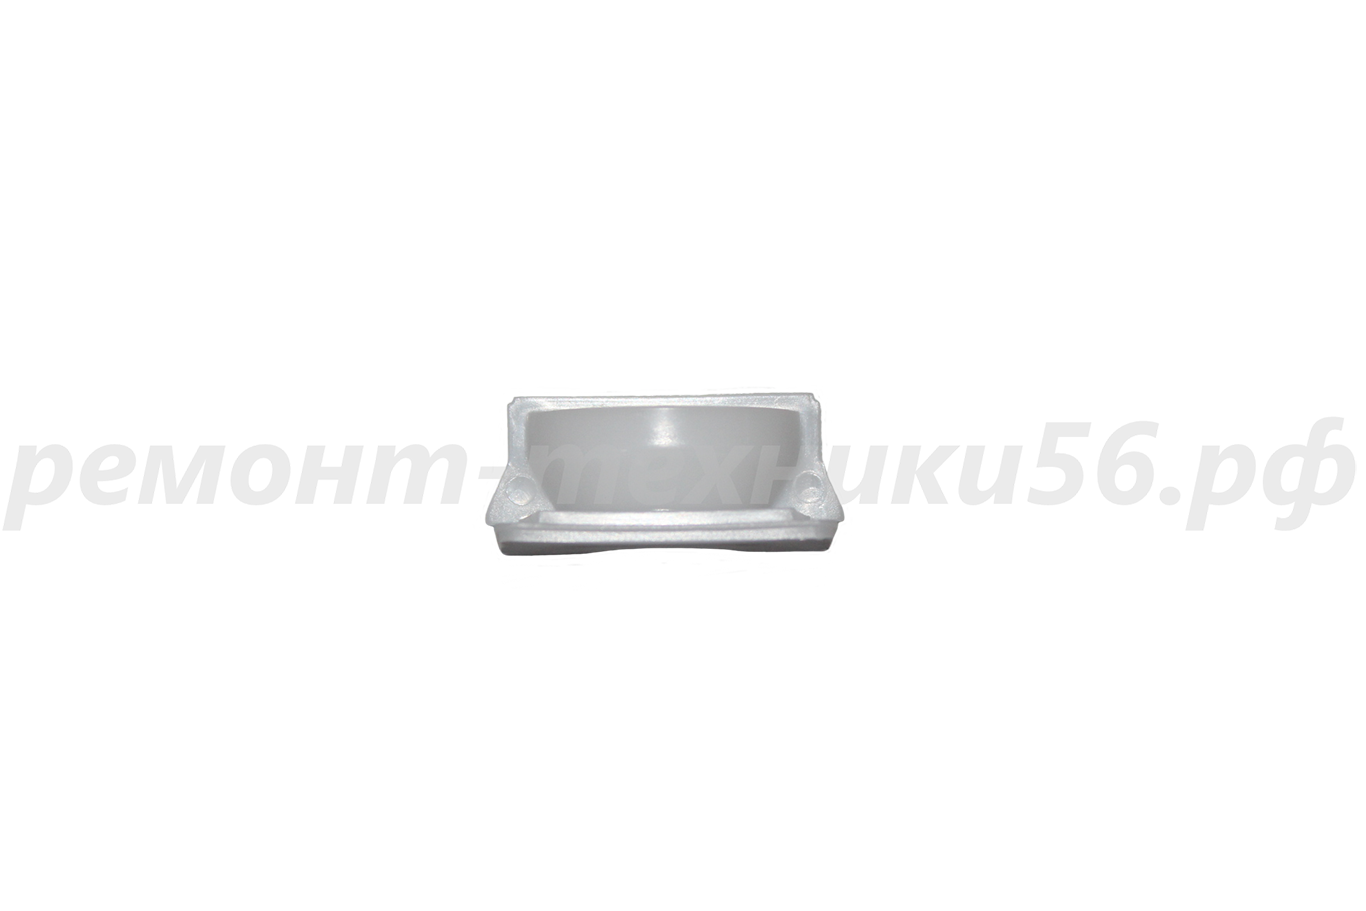 Подшипник скольжения передний Electrolux EHAW - 7515D white (сенсорное упр.) по выгодной цене фото8